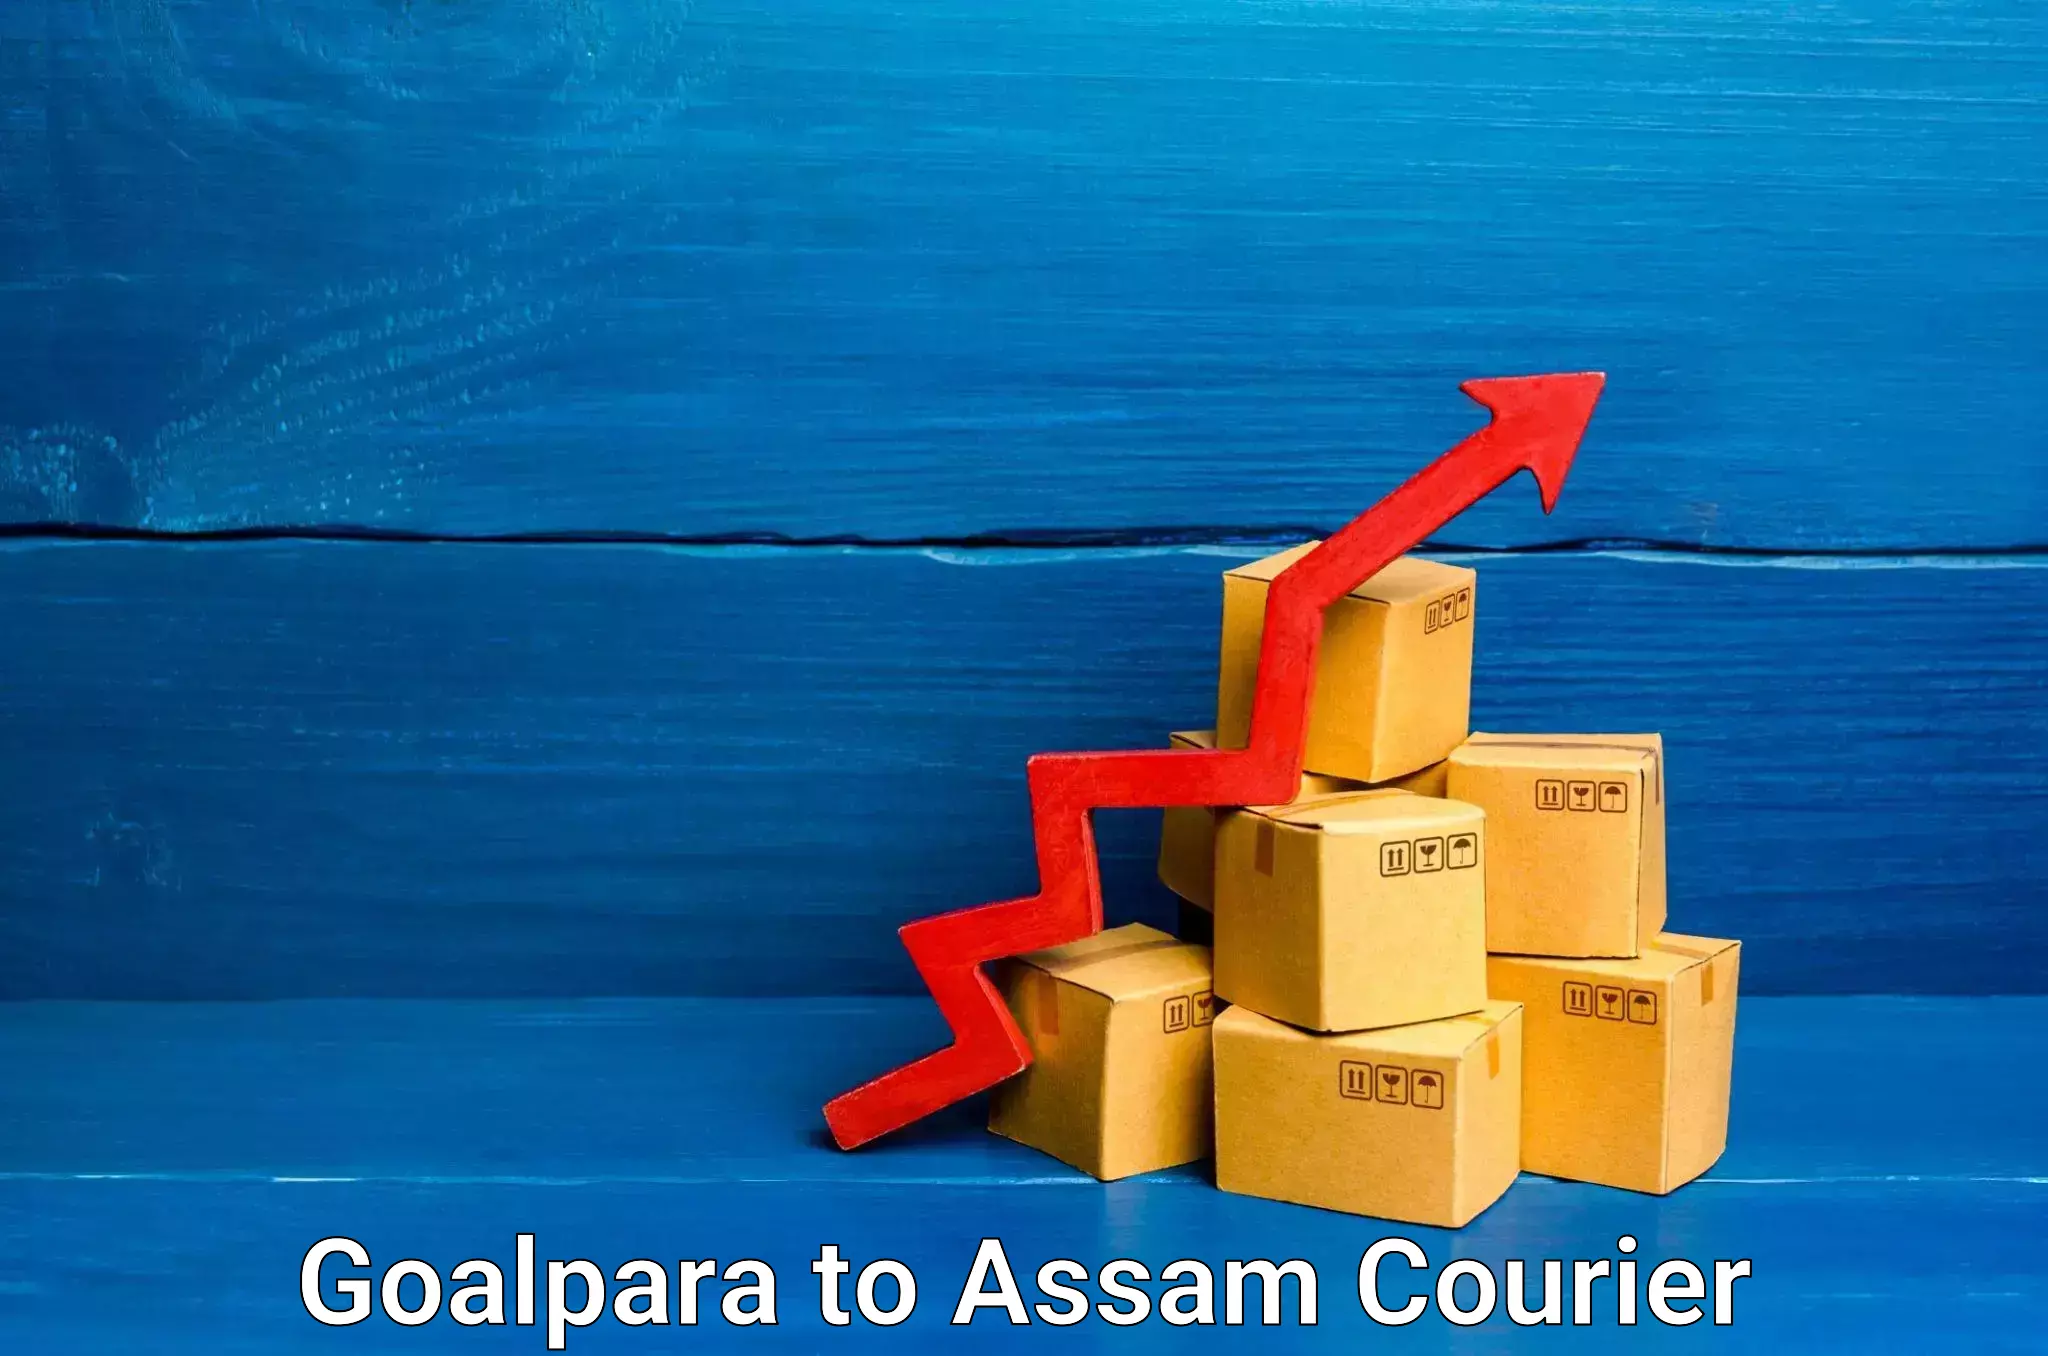 Business shipping needs Goalpara to Paneri Kamrup